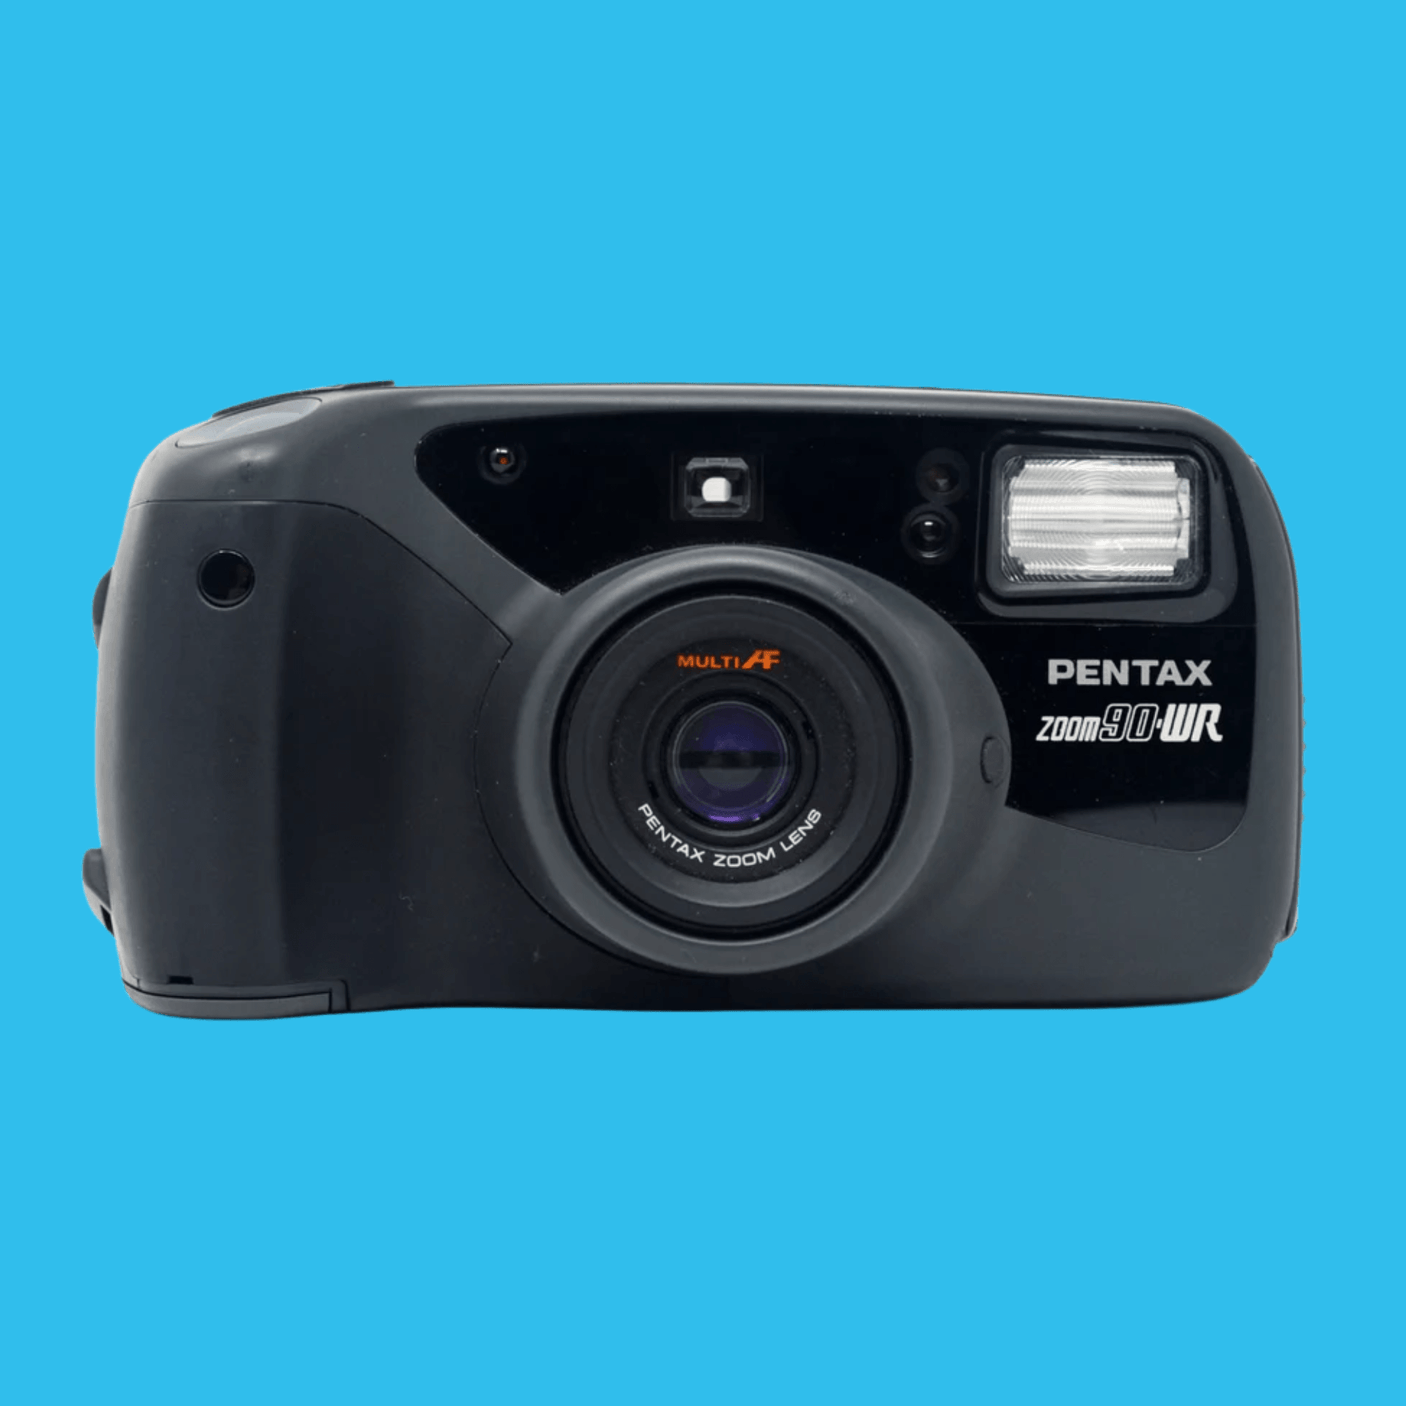 ペンタックス ズーム 90WR 35mm フィルム カメラ ポイント アンド シュート